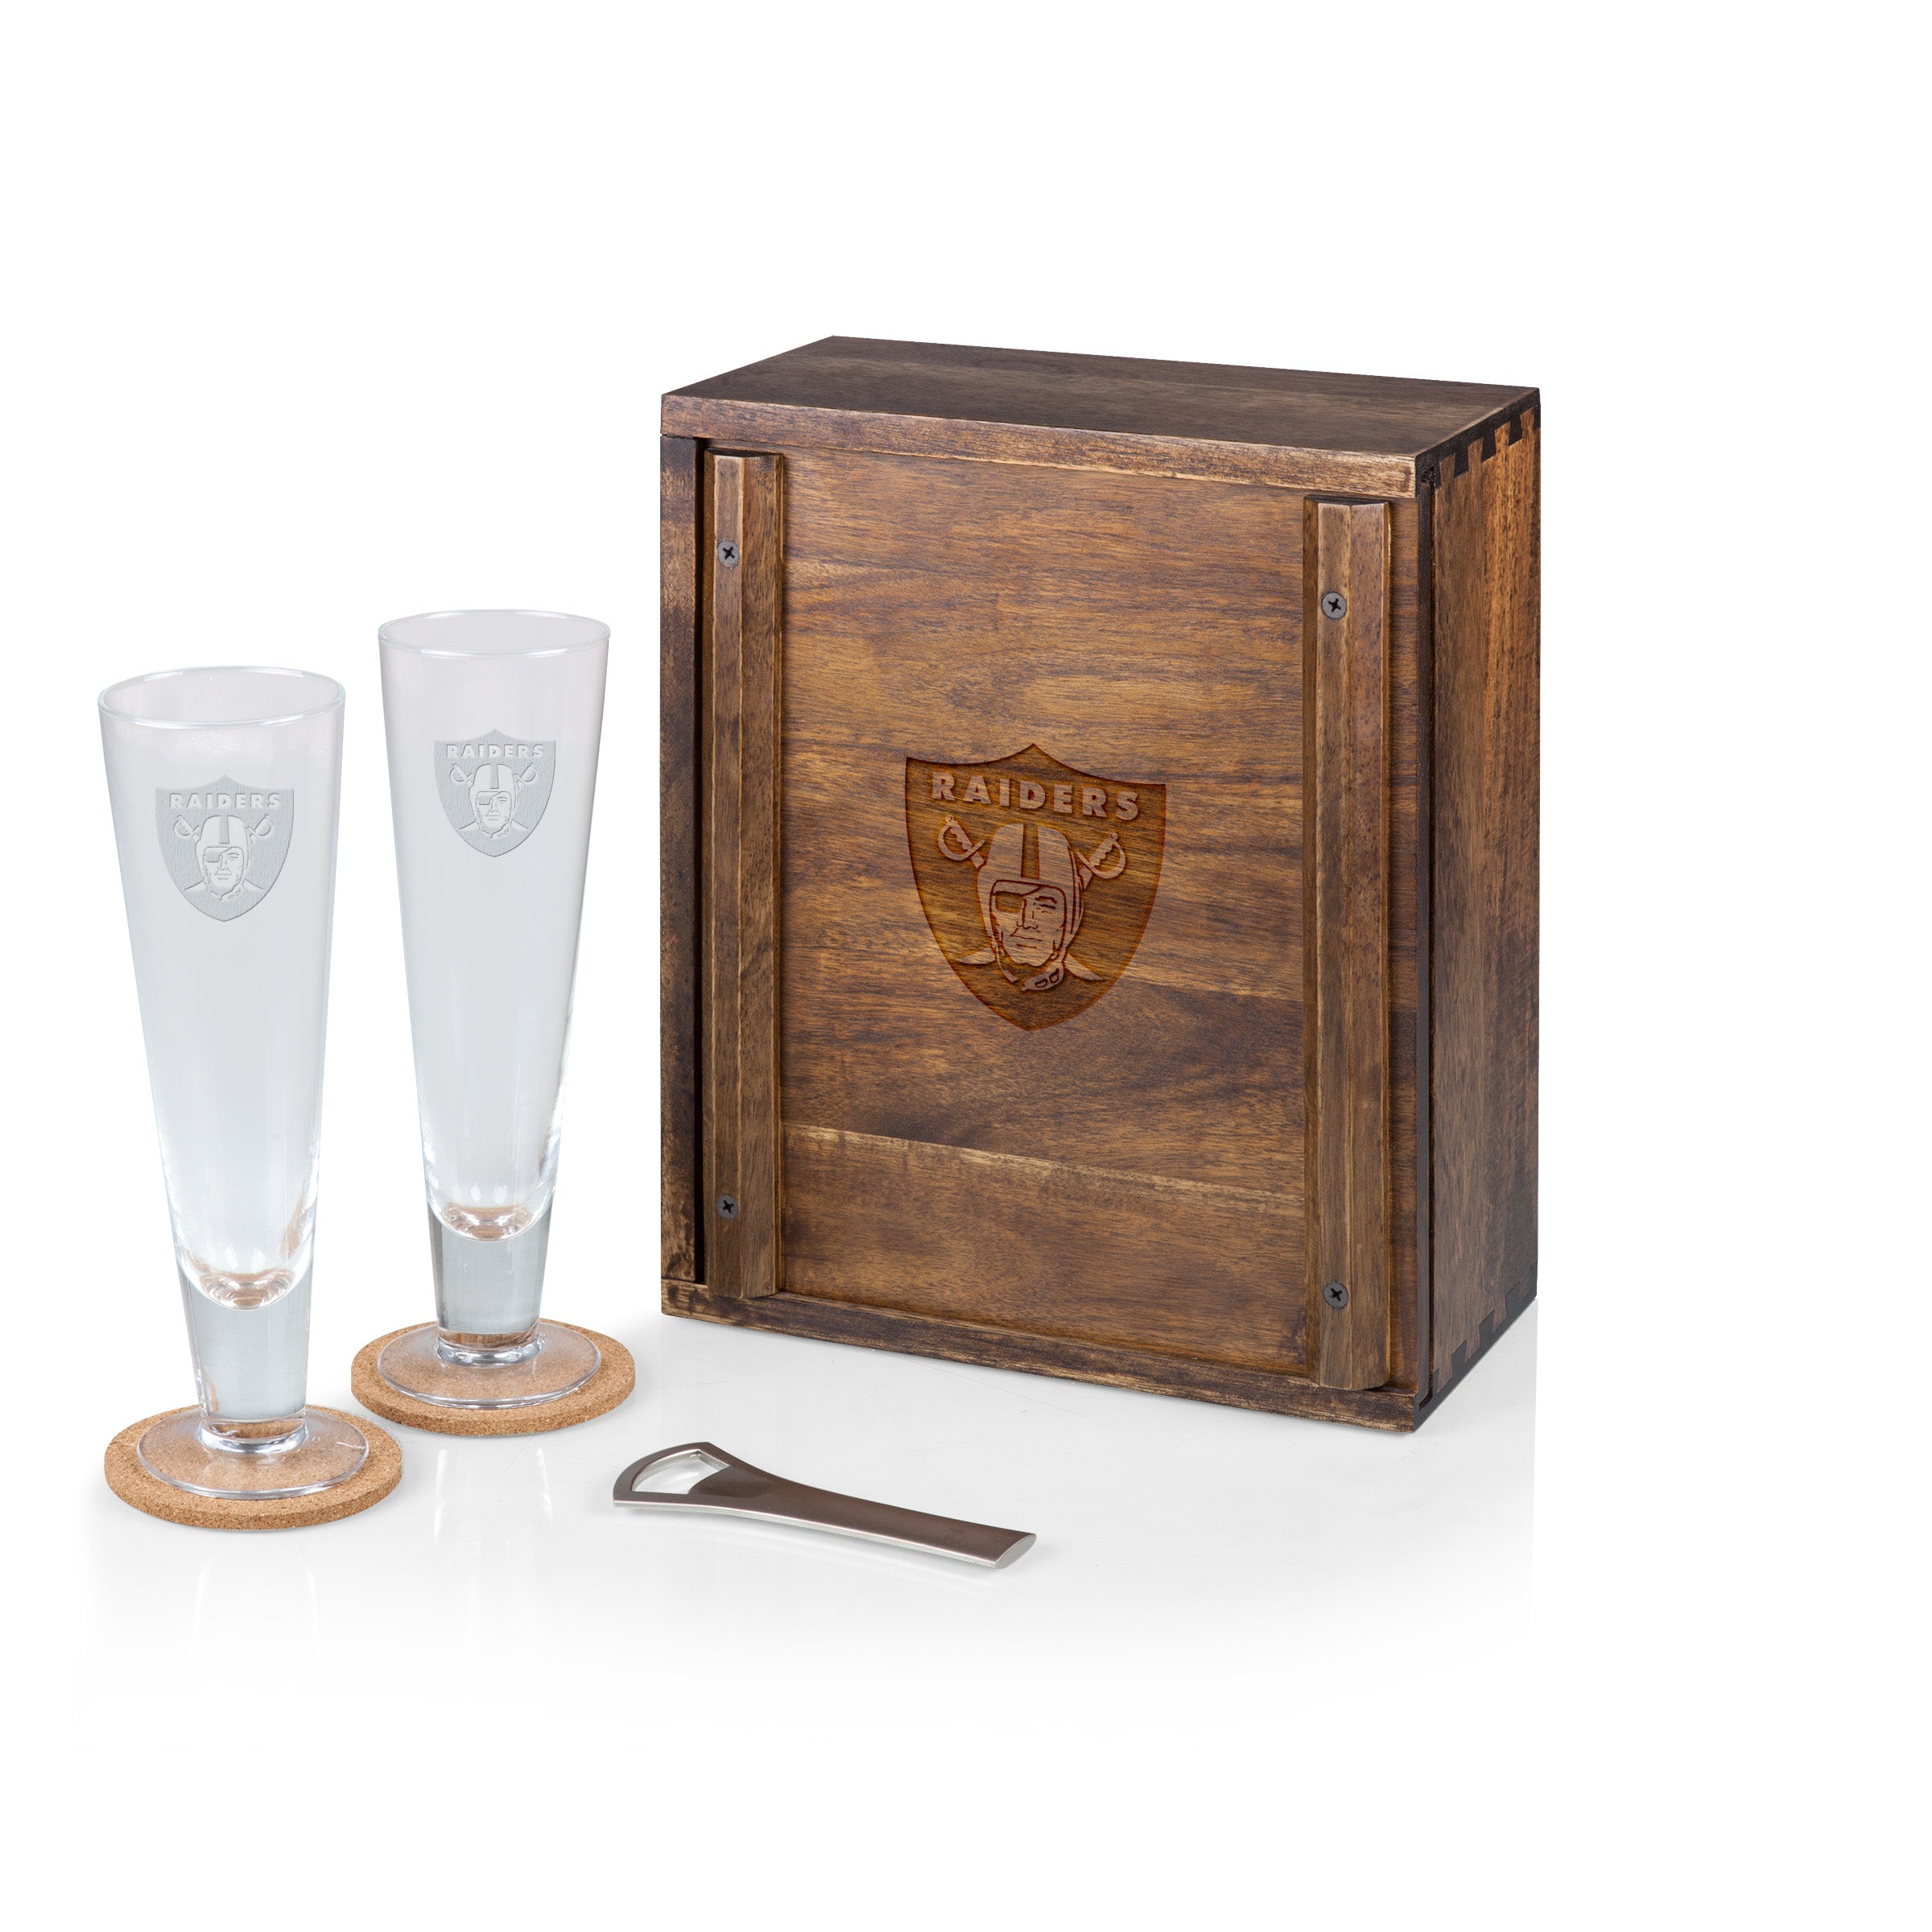 Las Vegas Raiders - Pilsner Beer Glass Gift Set